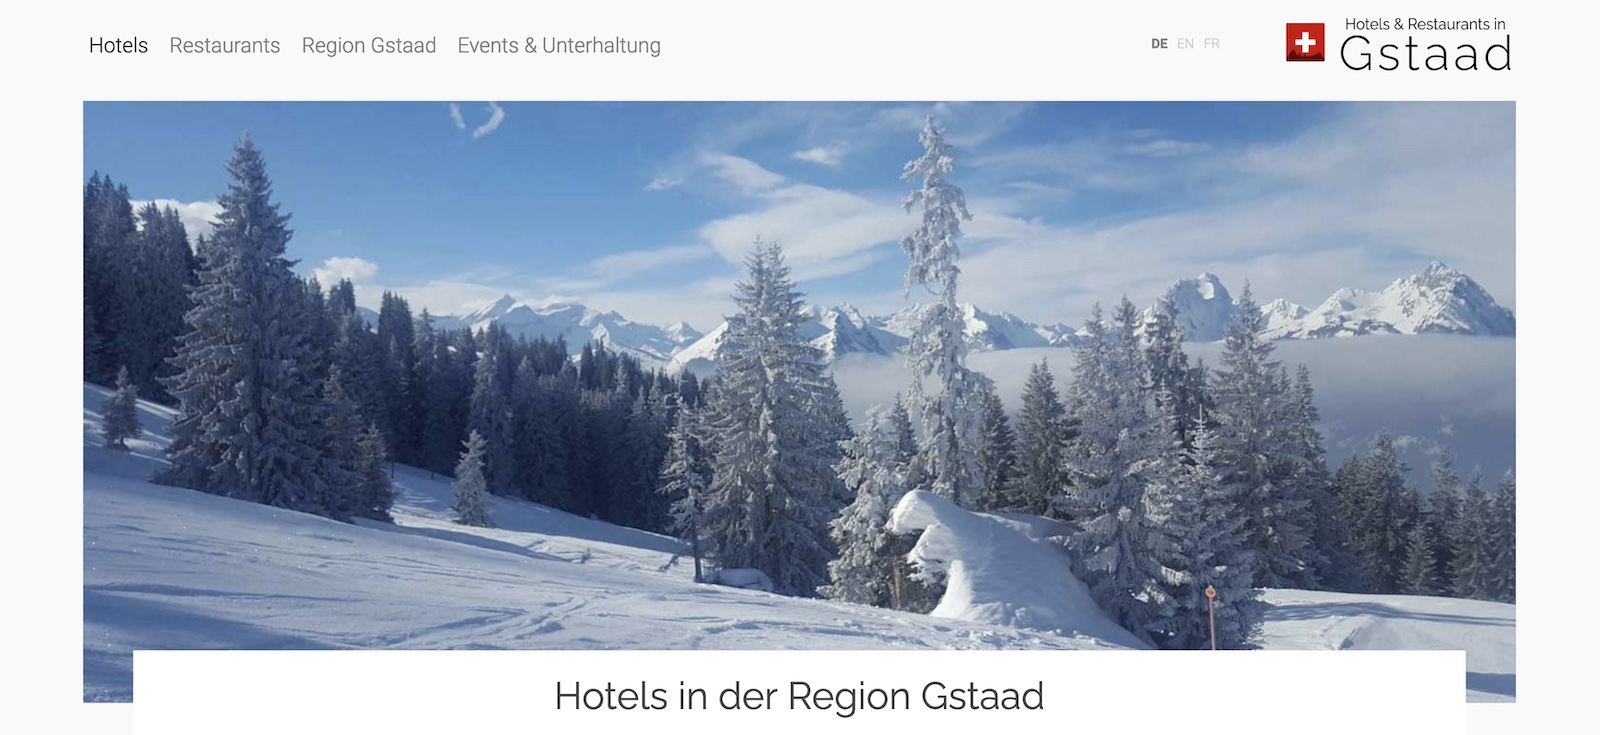 www.hotel-in-gstaad.com:
Die neue Buchungsplattform für Hotels in der Ferienregion Gstaad & Saanenland